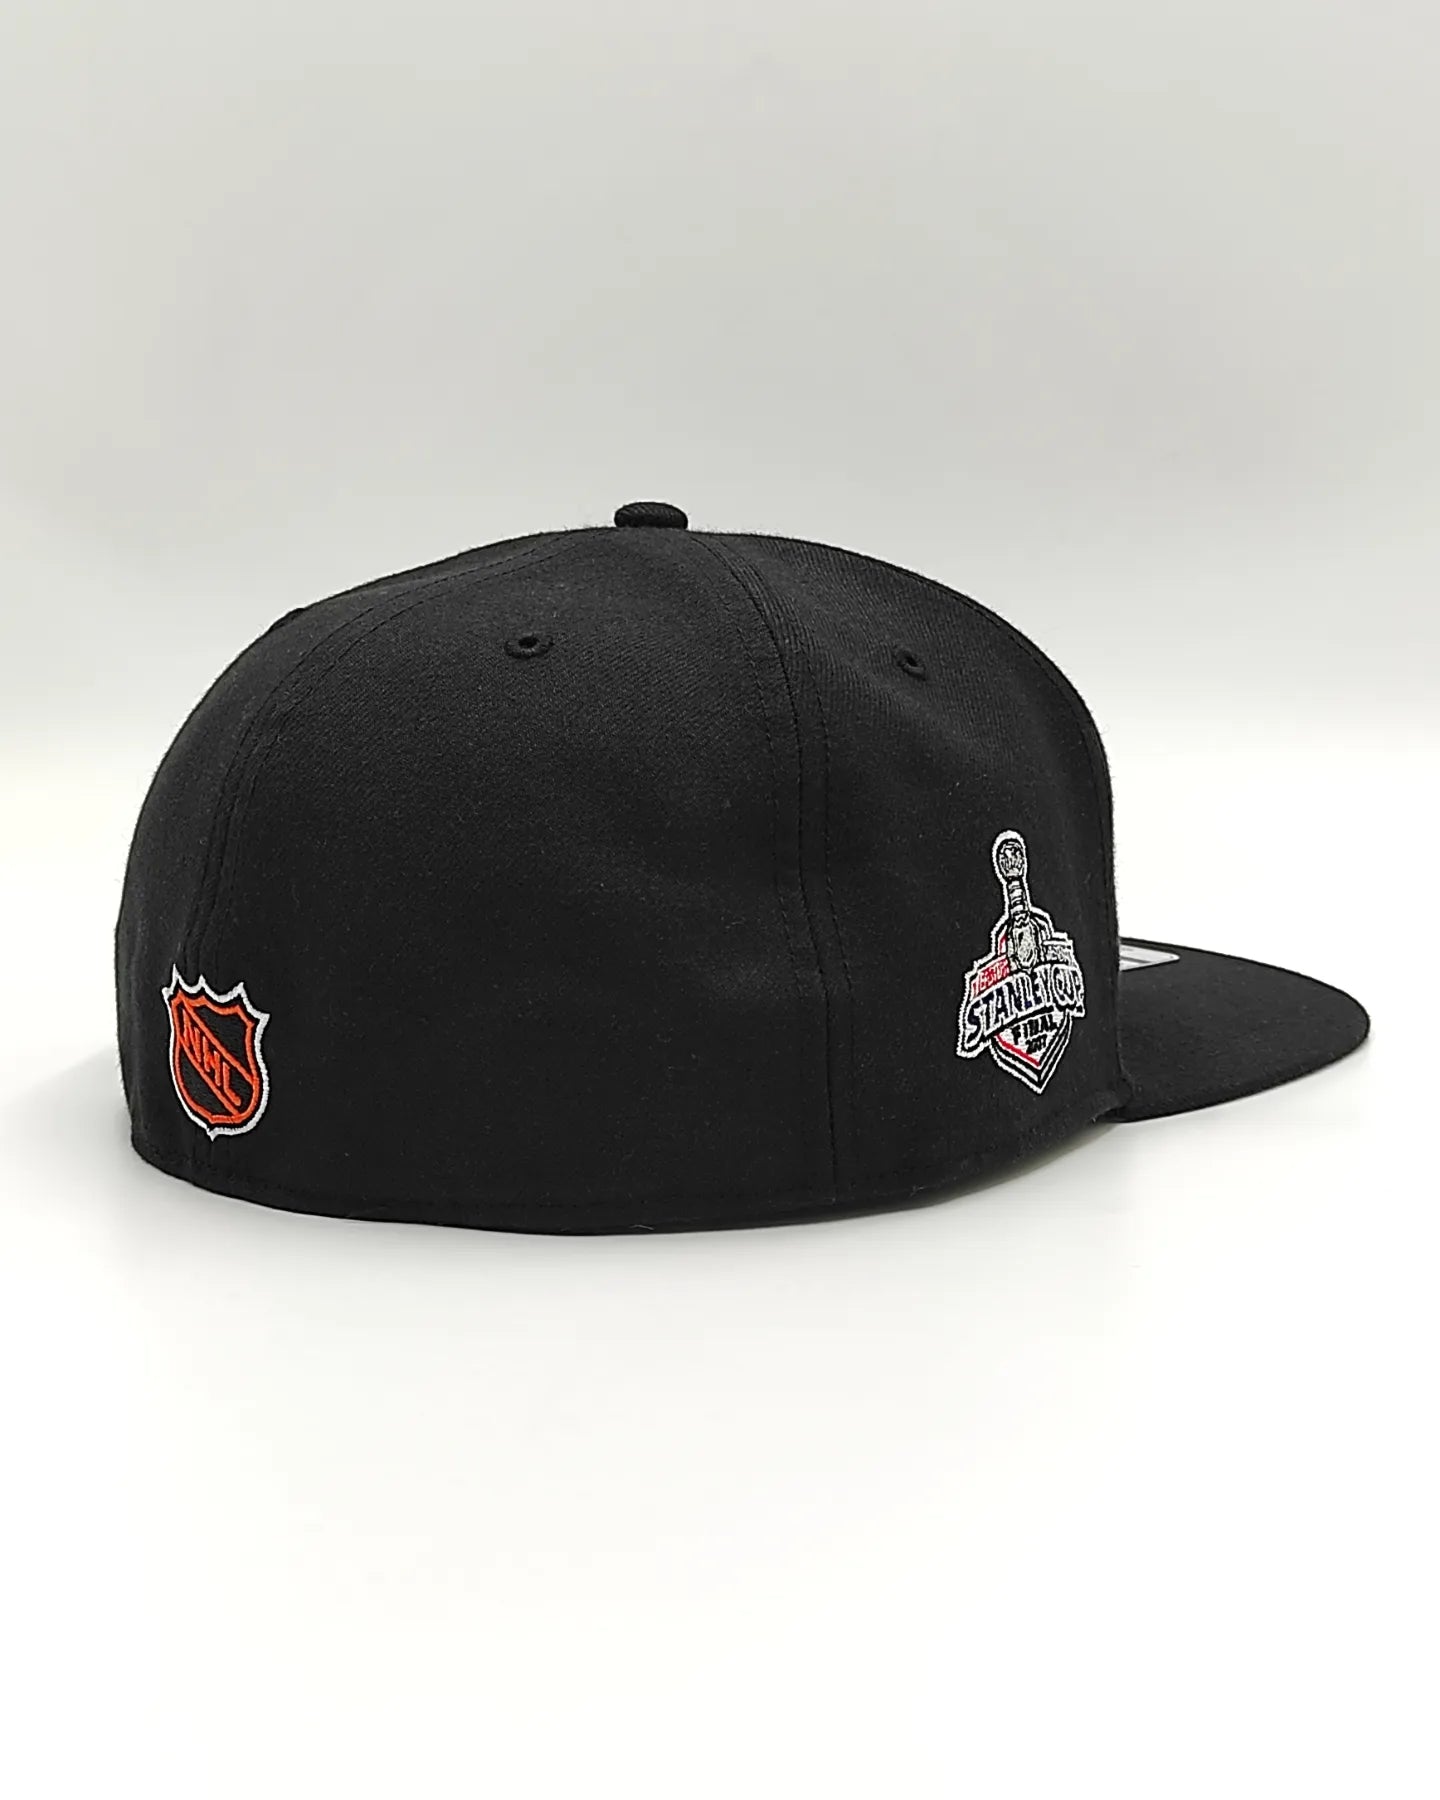 47brand Anaheim Ducks stanley cup 2007 vintage black 47pro fitted hat